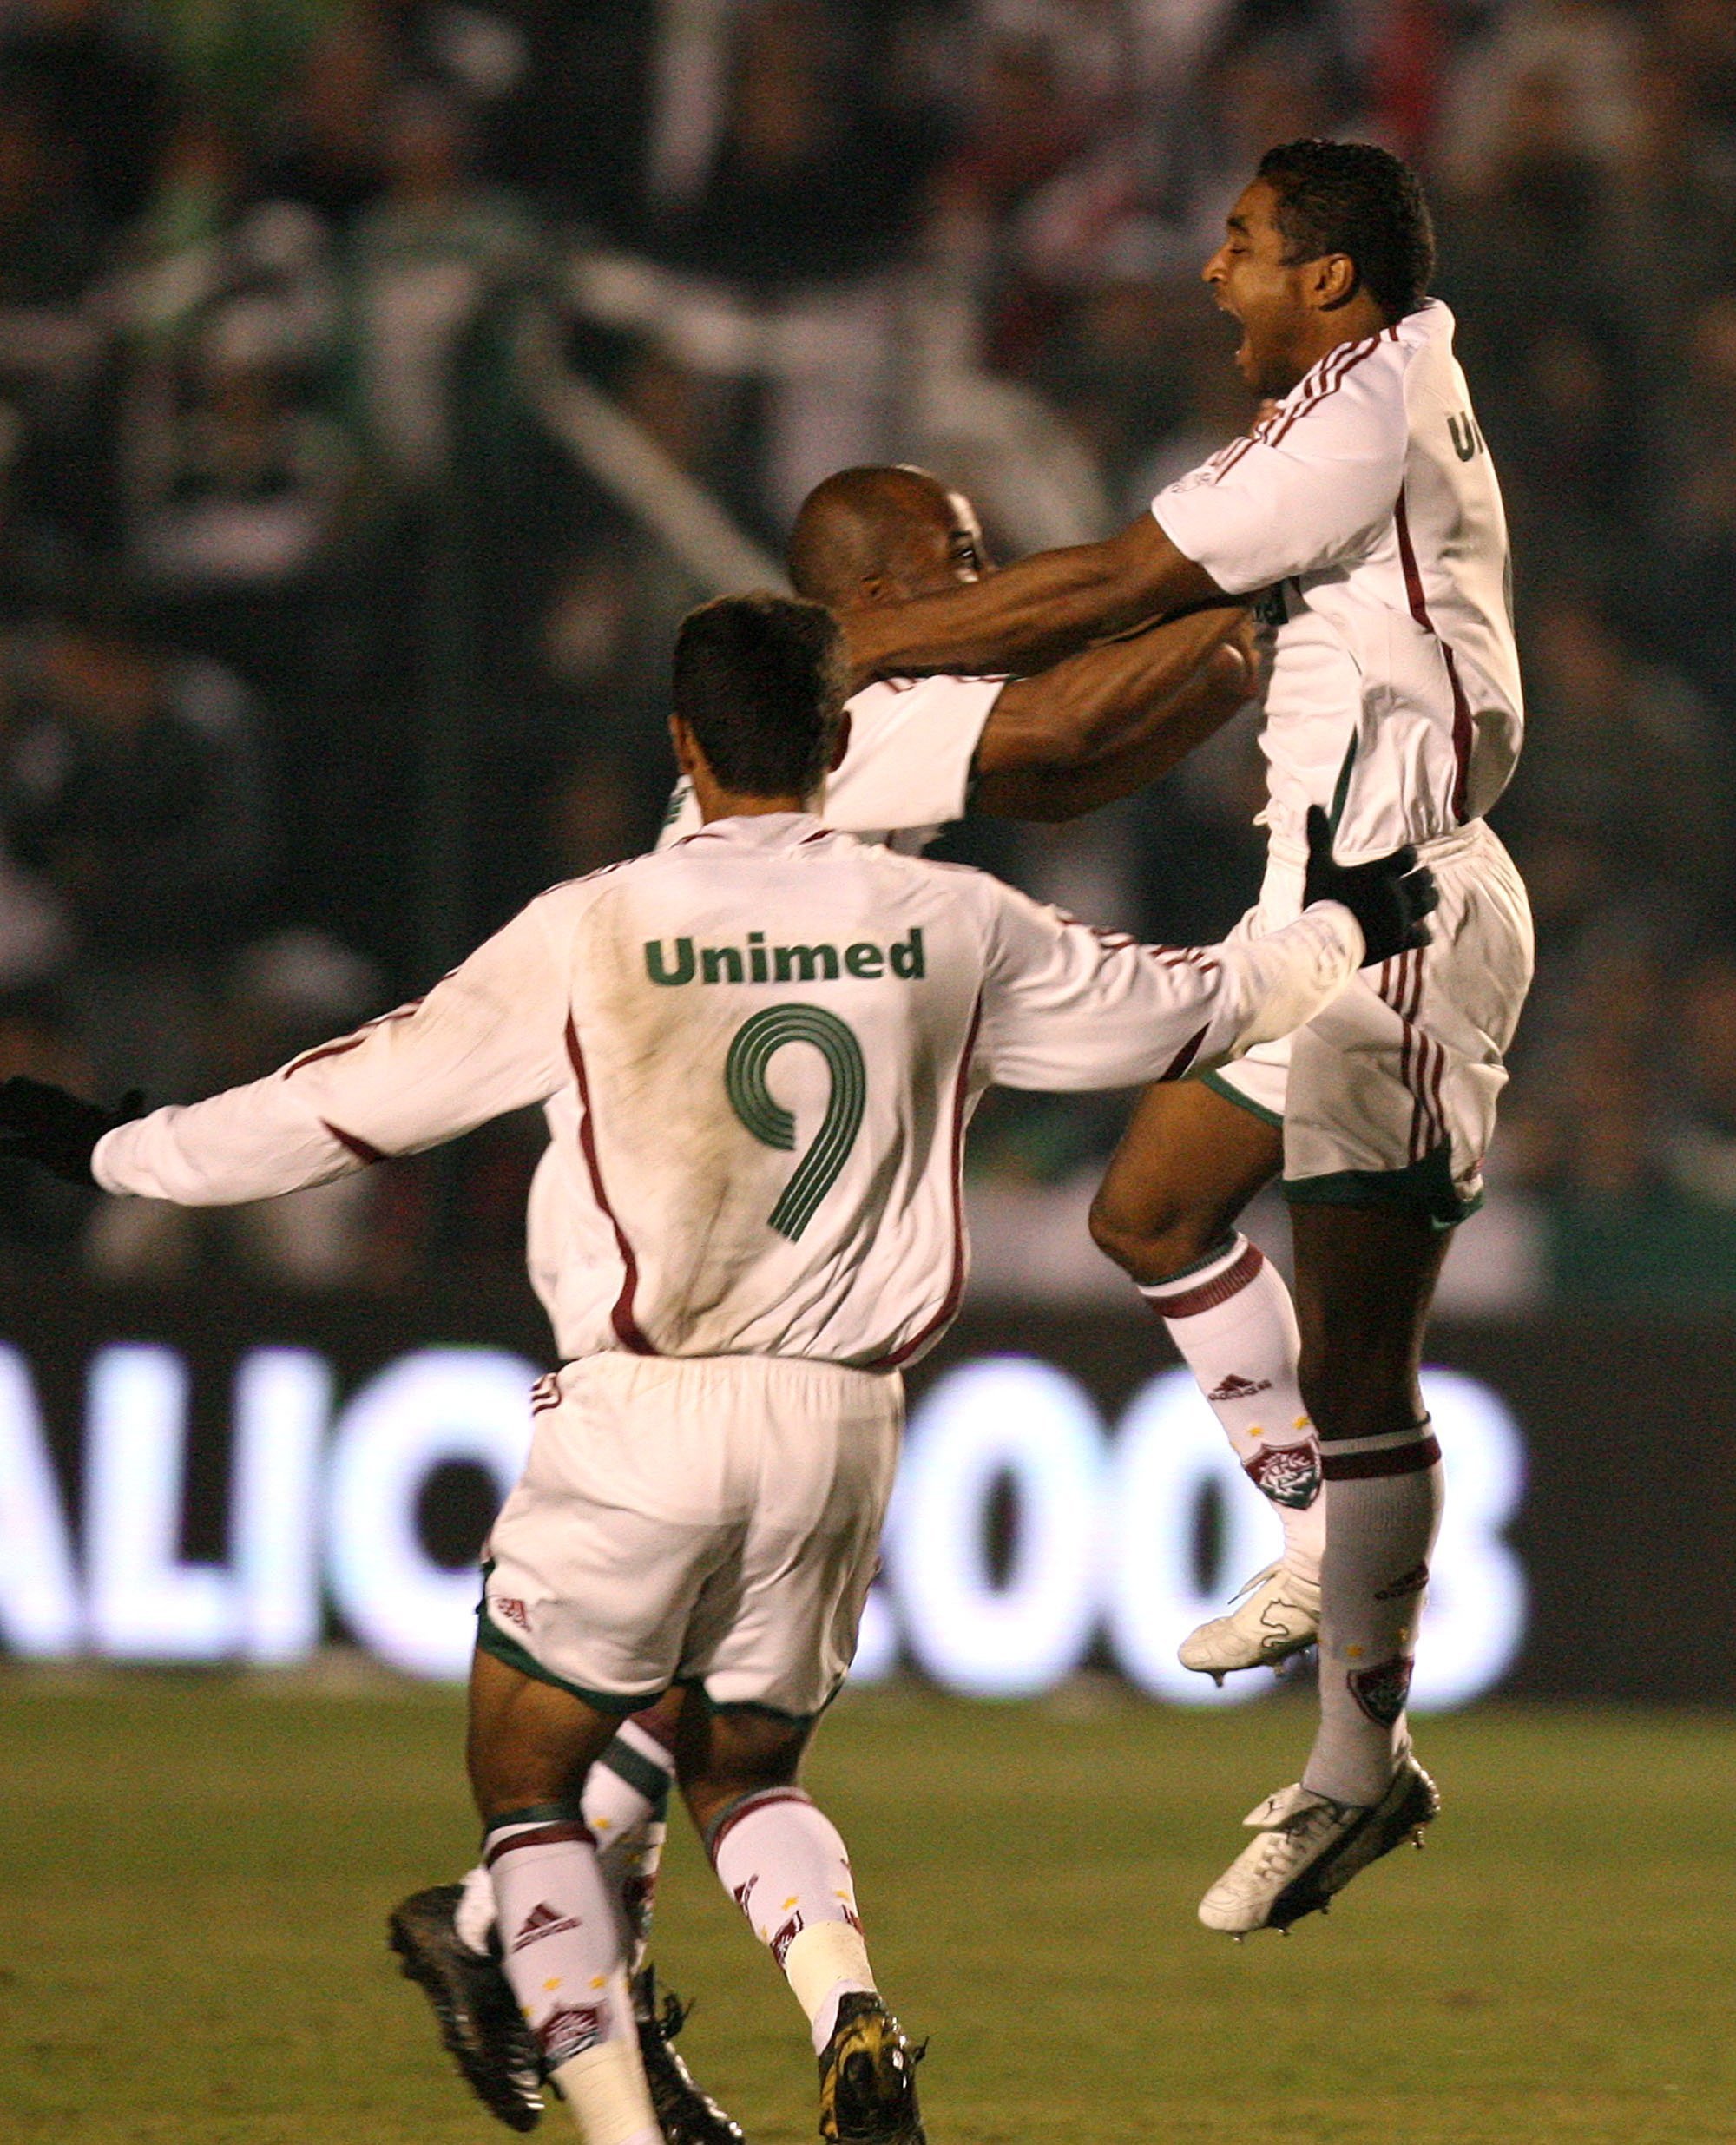 Na decisão da Copa do Brasil 2007, o Tricolor havia empatado no Maracanã por 1 a 1 com o Figueirense e precisava da vitória. O gol saiu logo no início, marcado por Roger, atualmente técnico do Bahia